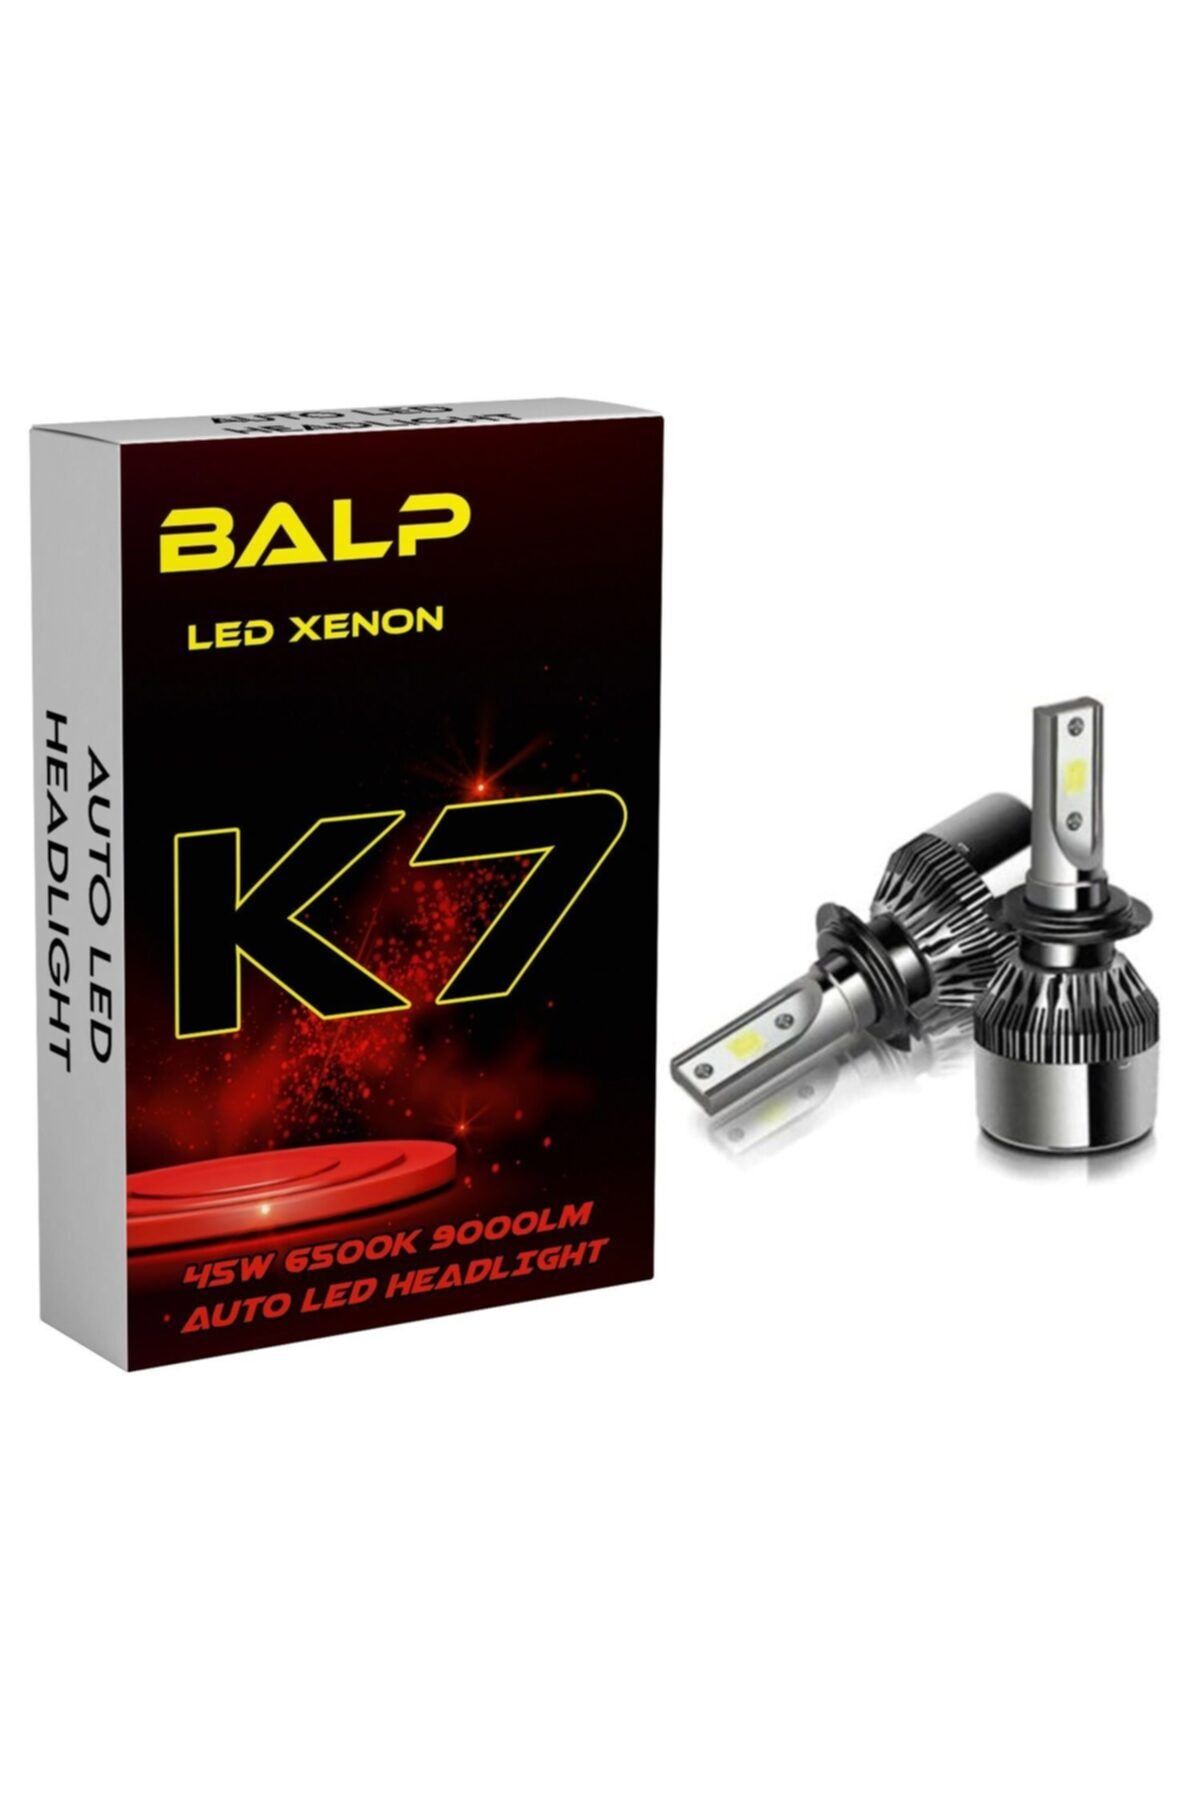 BALP K7 Beyaz Renk Led Zenon H3 Led Xenon 45w 9000lm Far Ampülü Şimşek Etkili